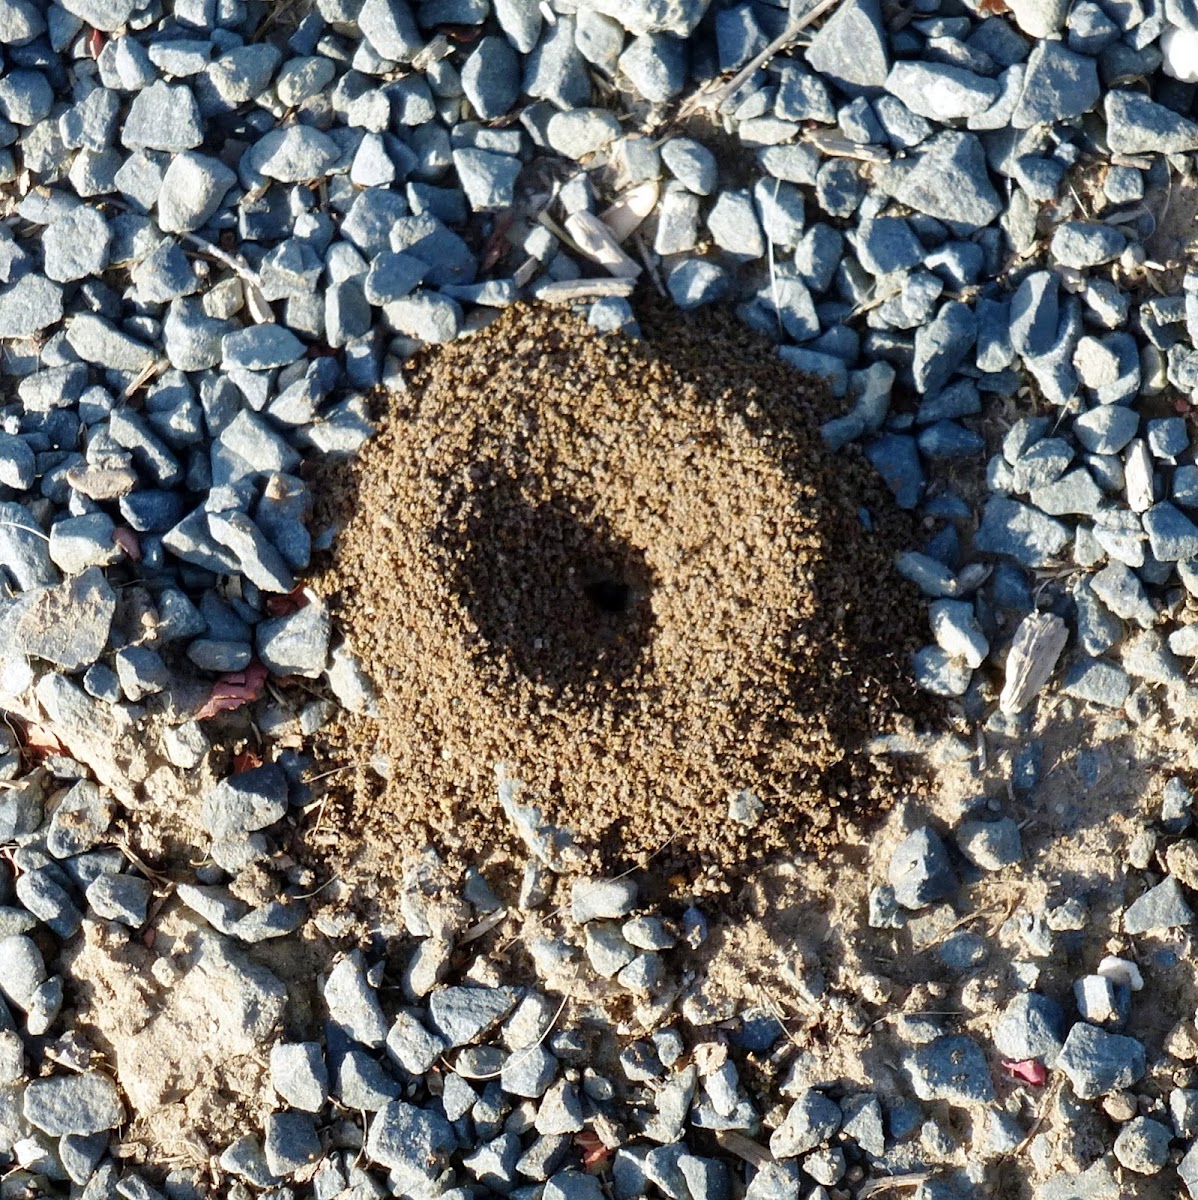 Lasius Ant mound